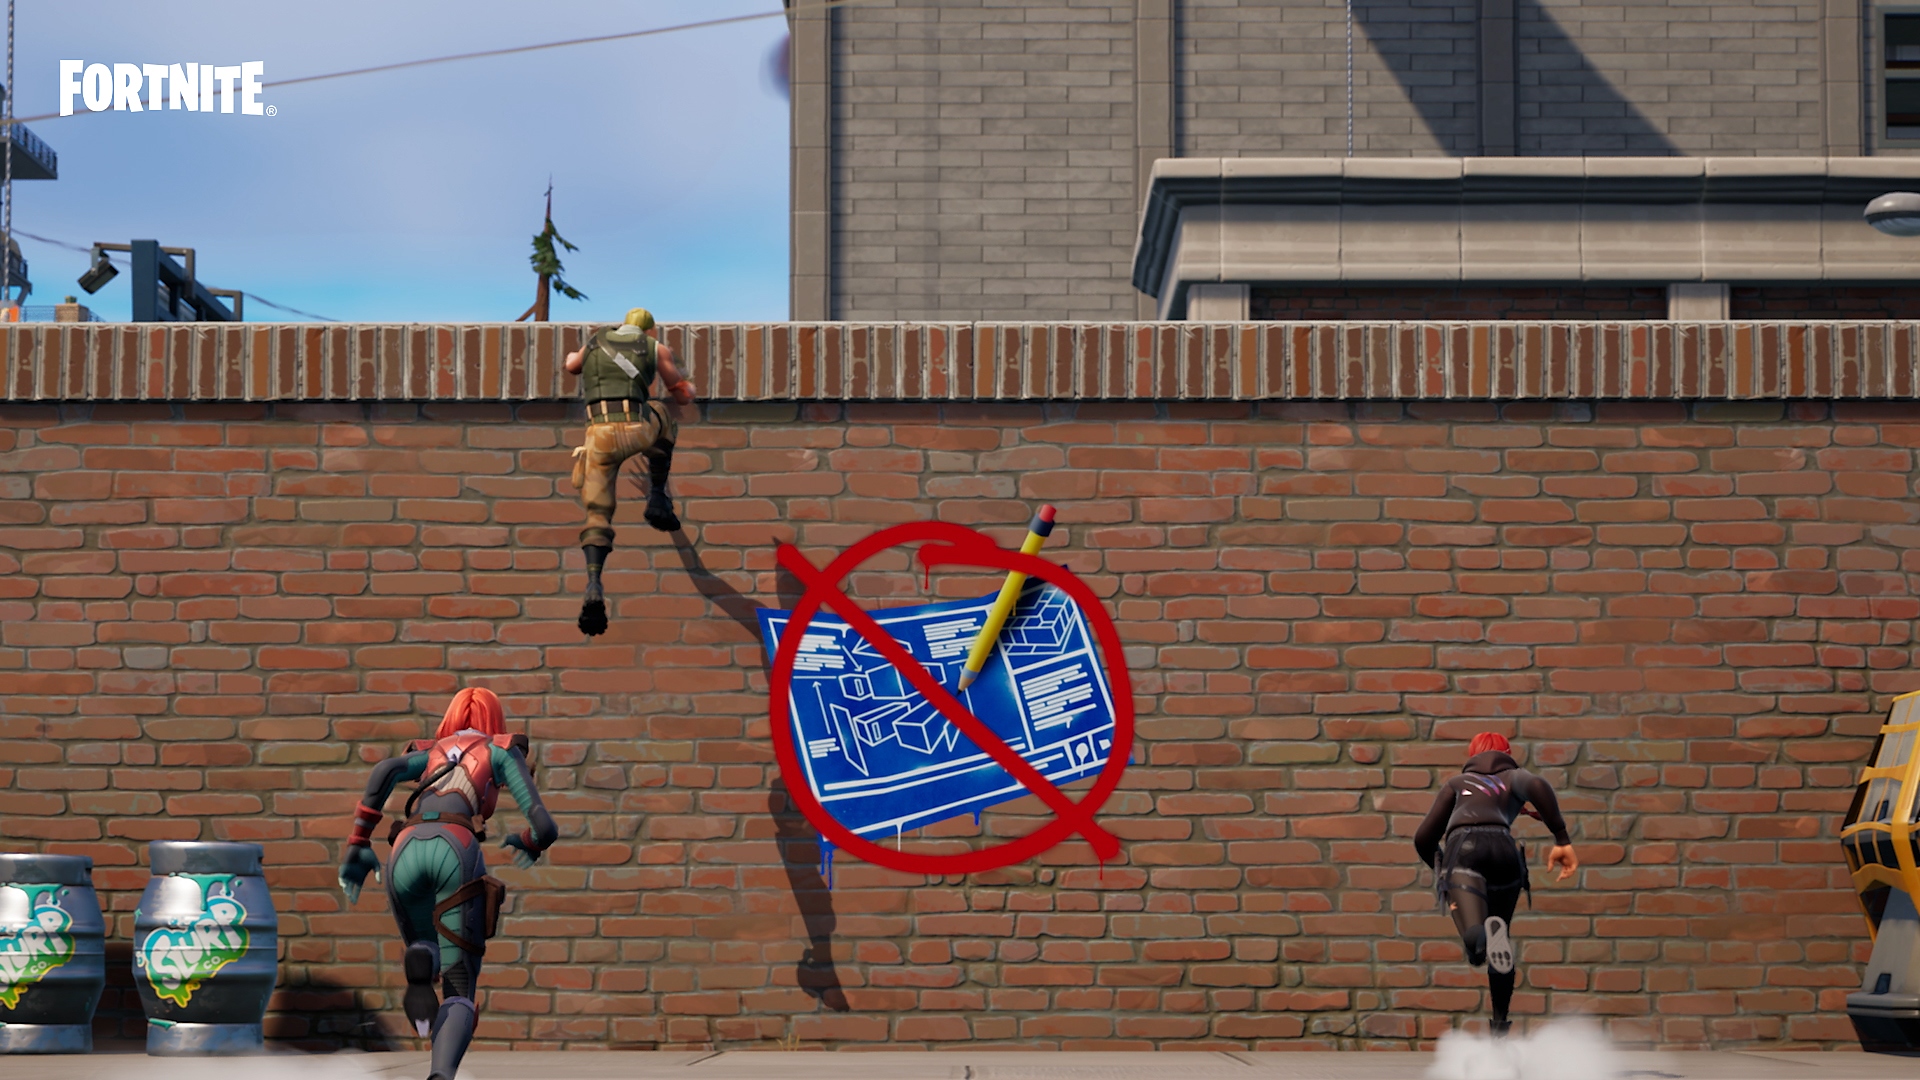 Fortnite - mode Zéro construction - personnages escaladant un mur